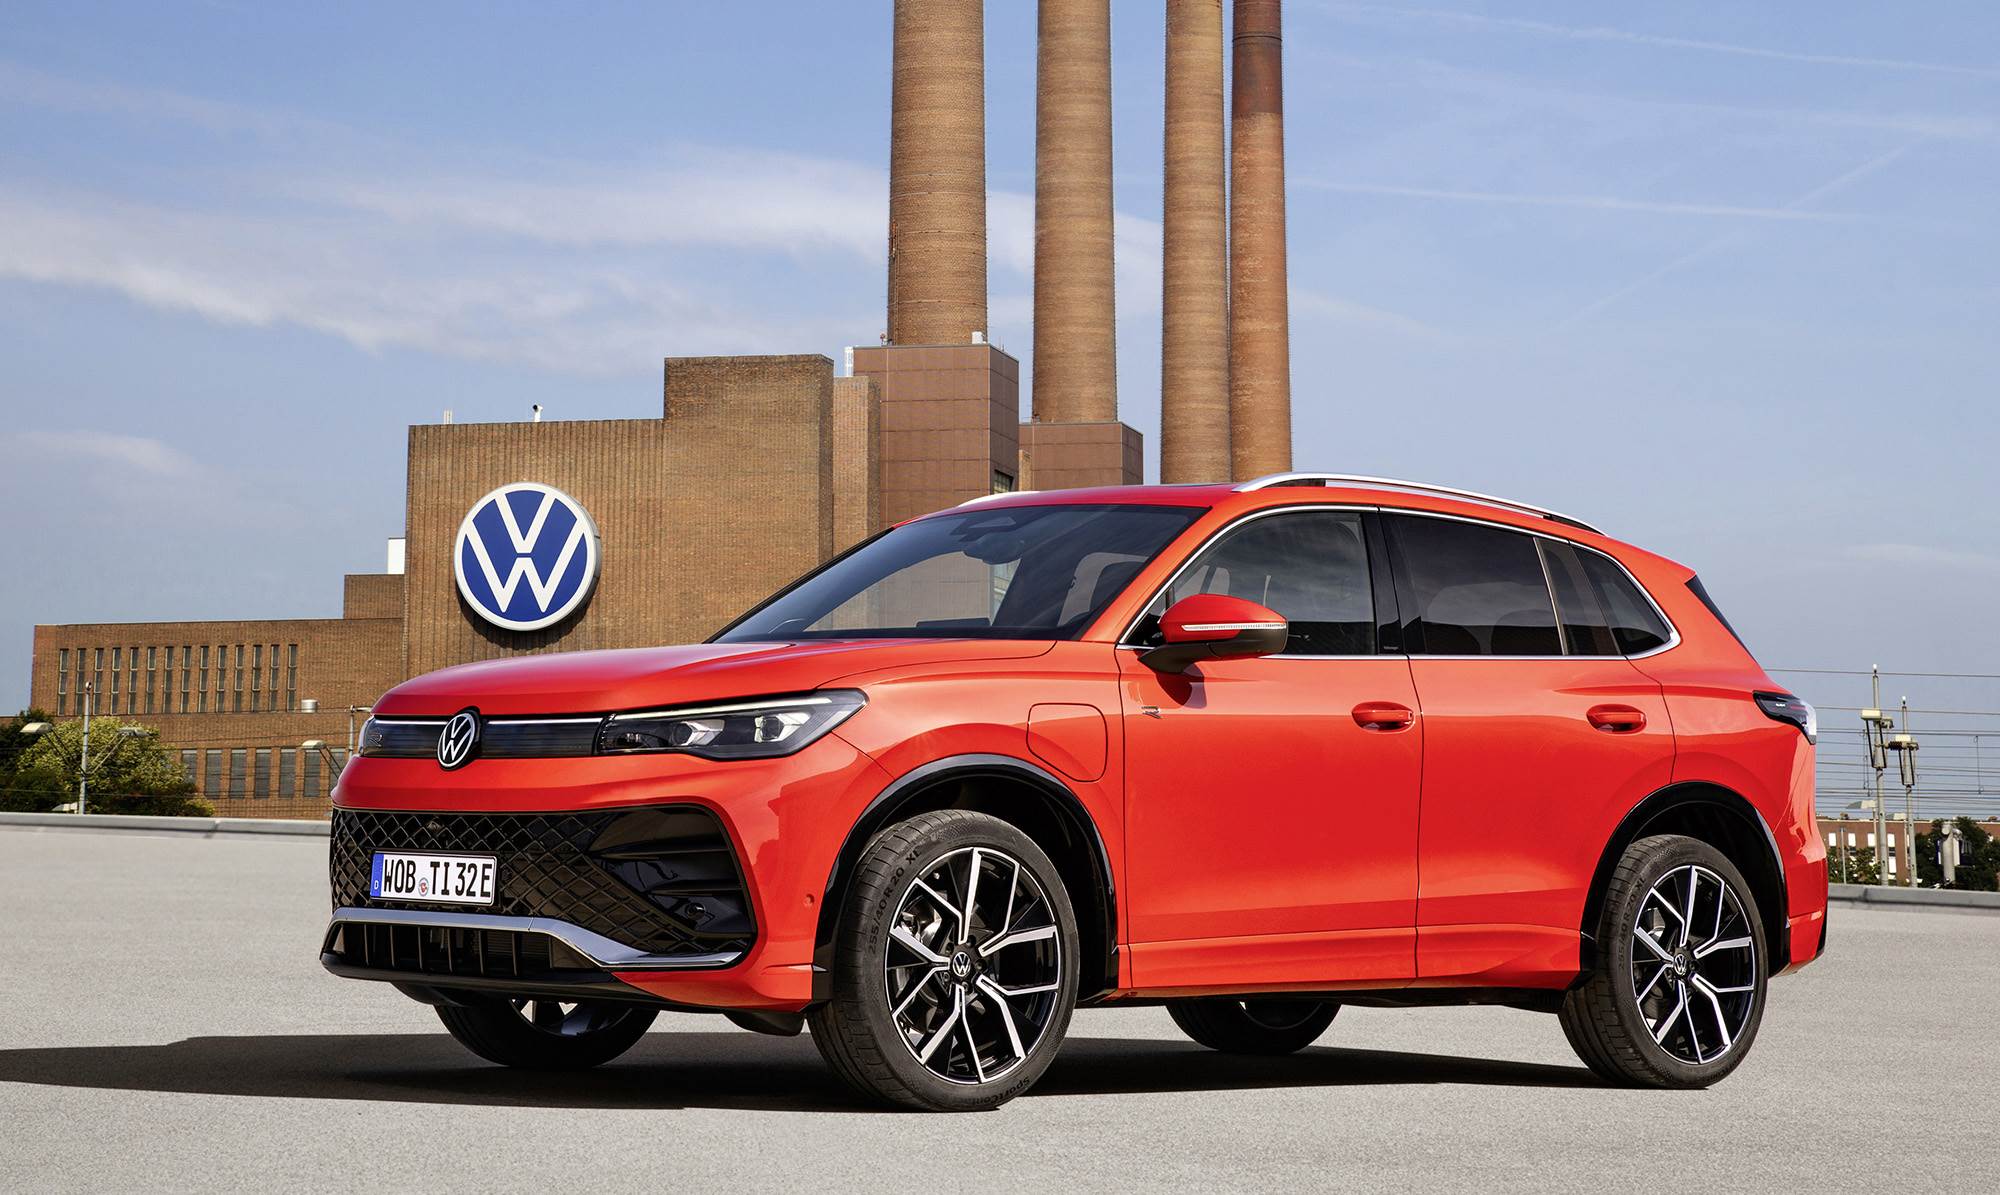 Volkswagen reveals new Tiguan ahead of world premiere